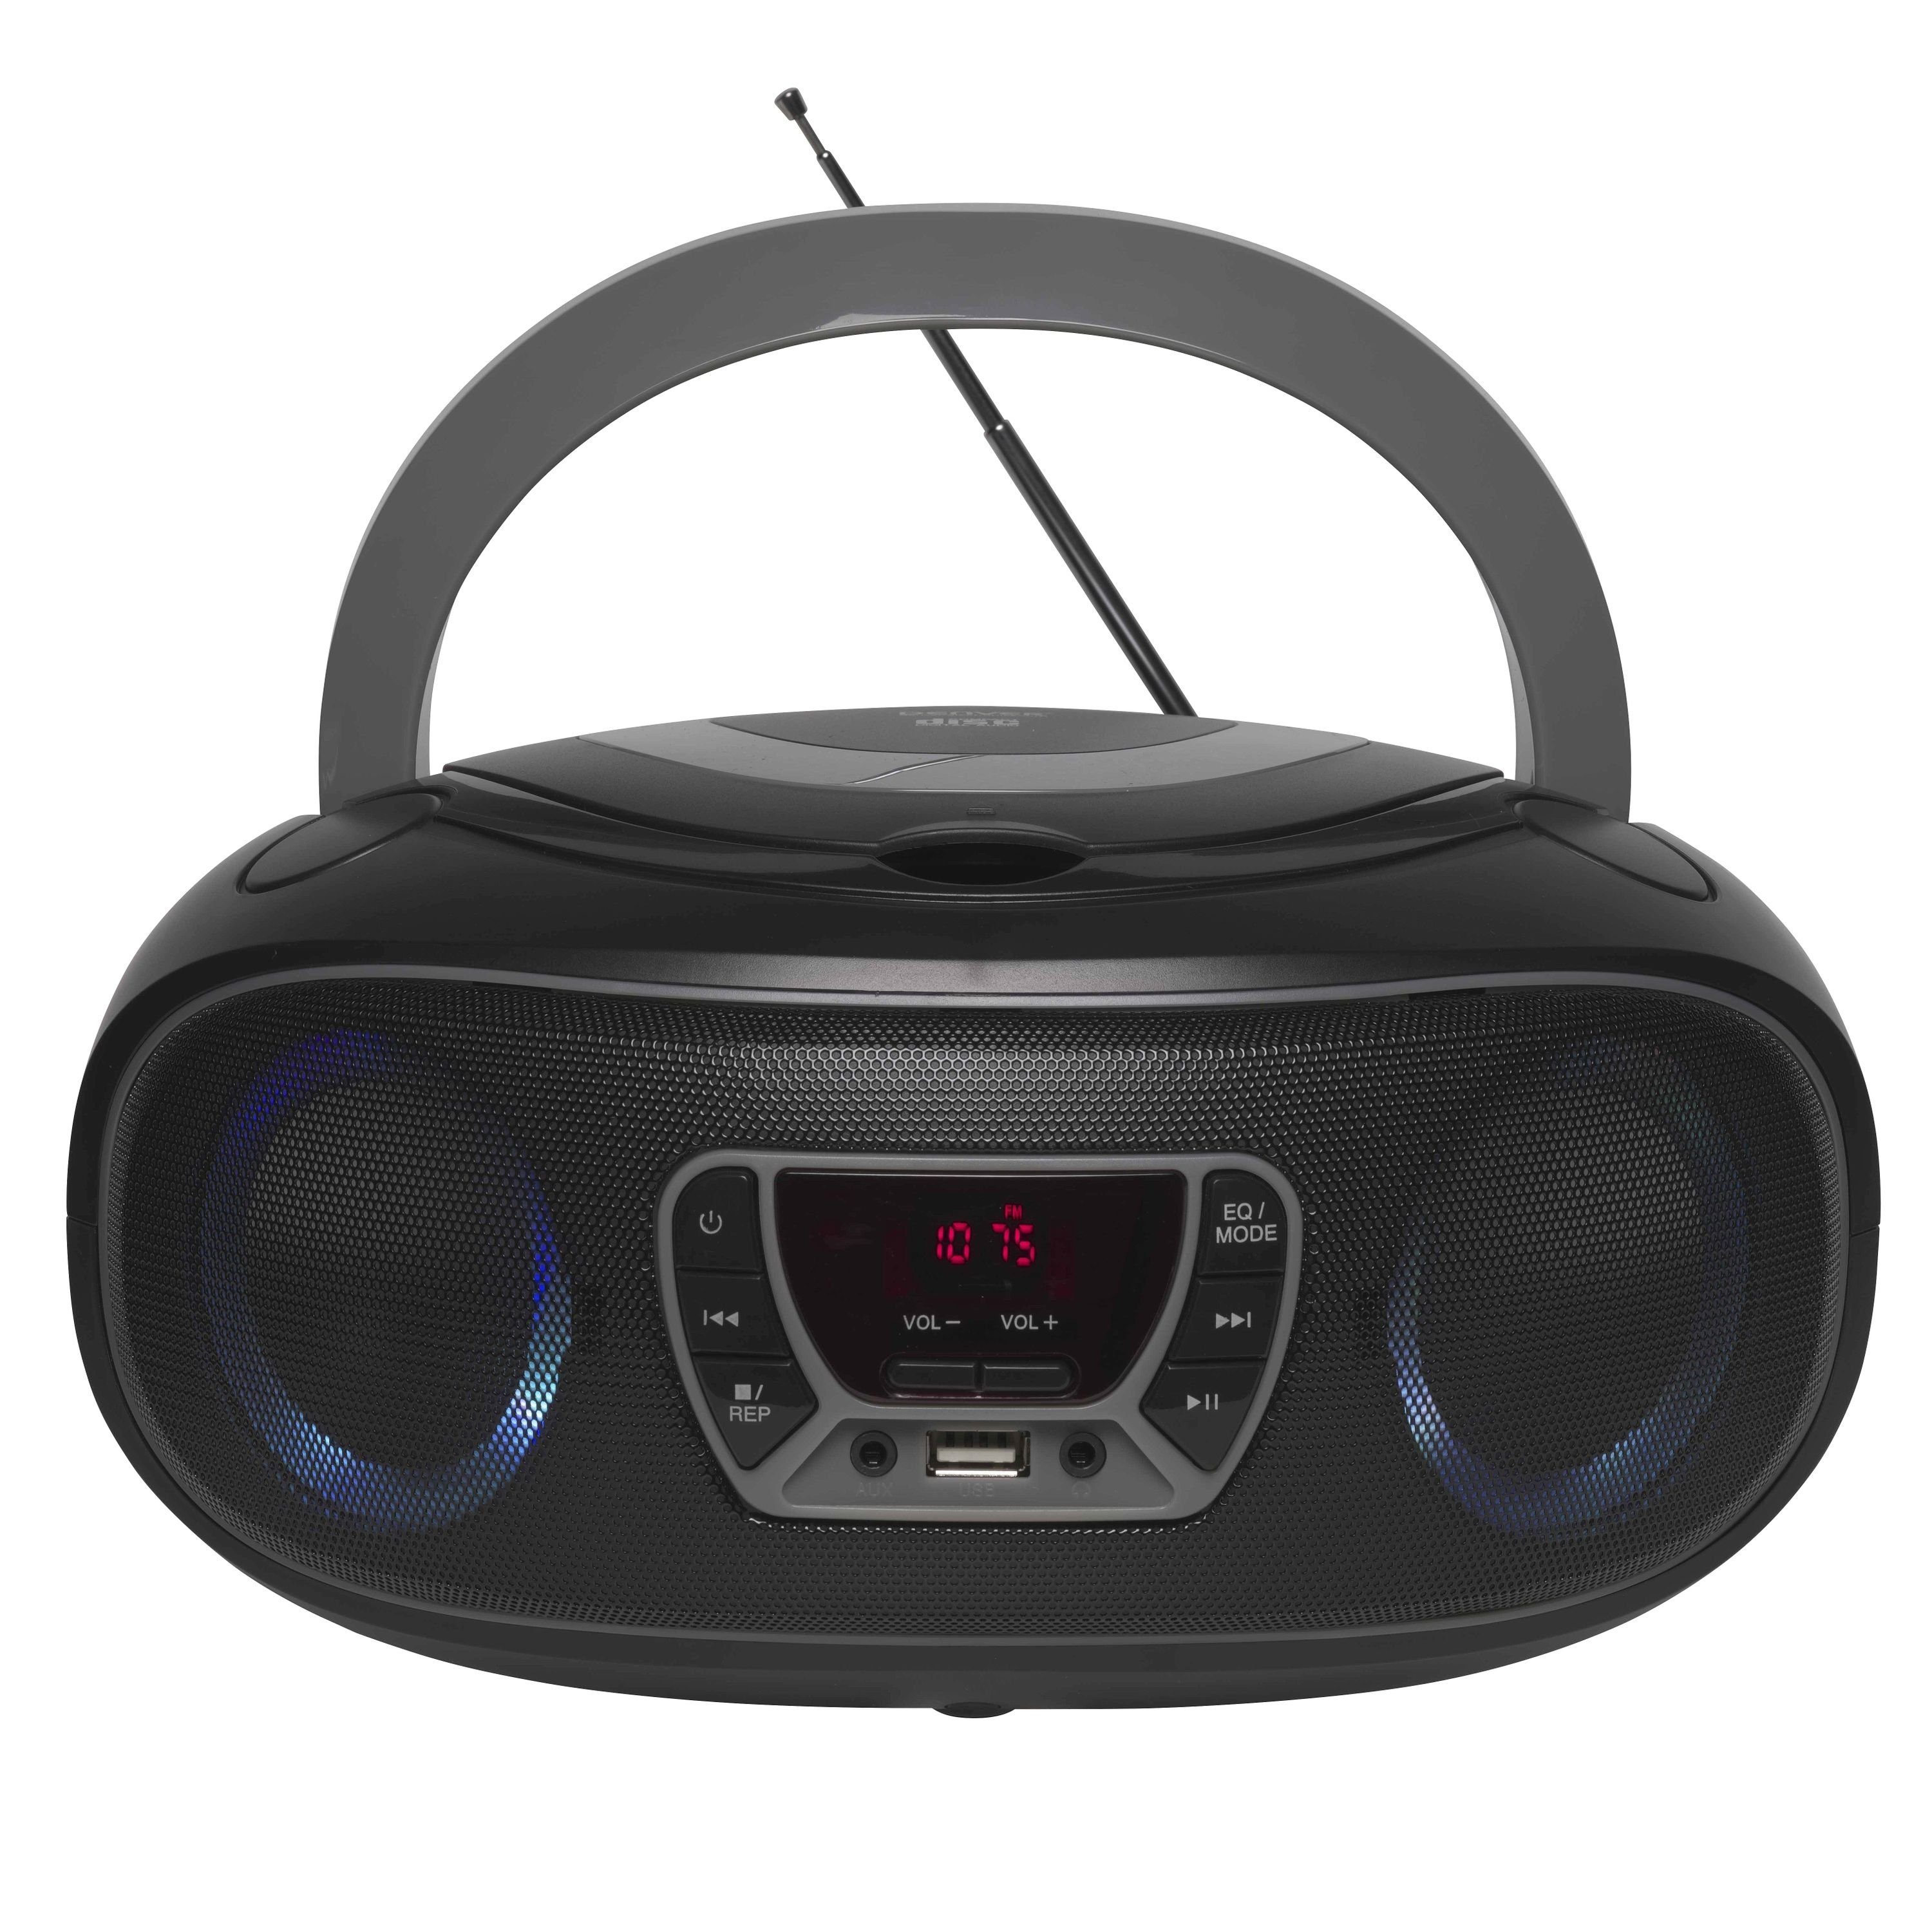 Denver TCL-212BT GREY Boombox (UKW Radio, Bluetooth, USB, AUX-IN, Kopfhörerausgang und LED Partylicht) Grau